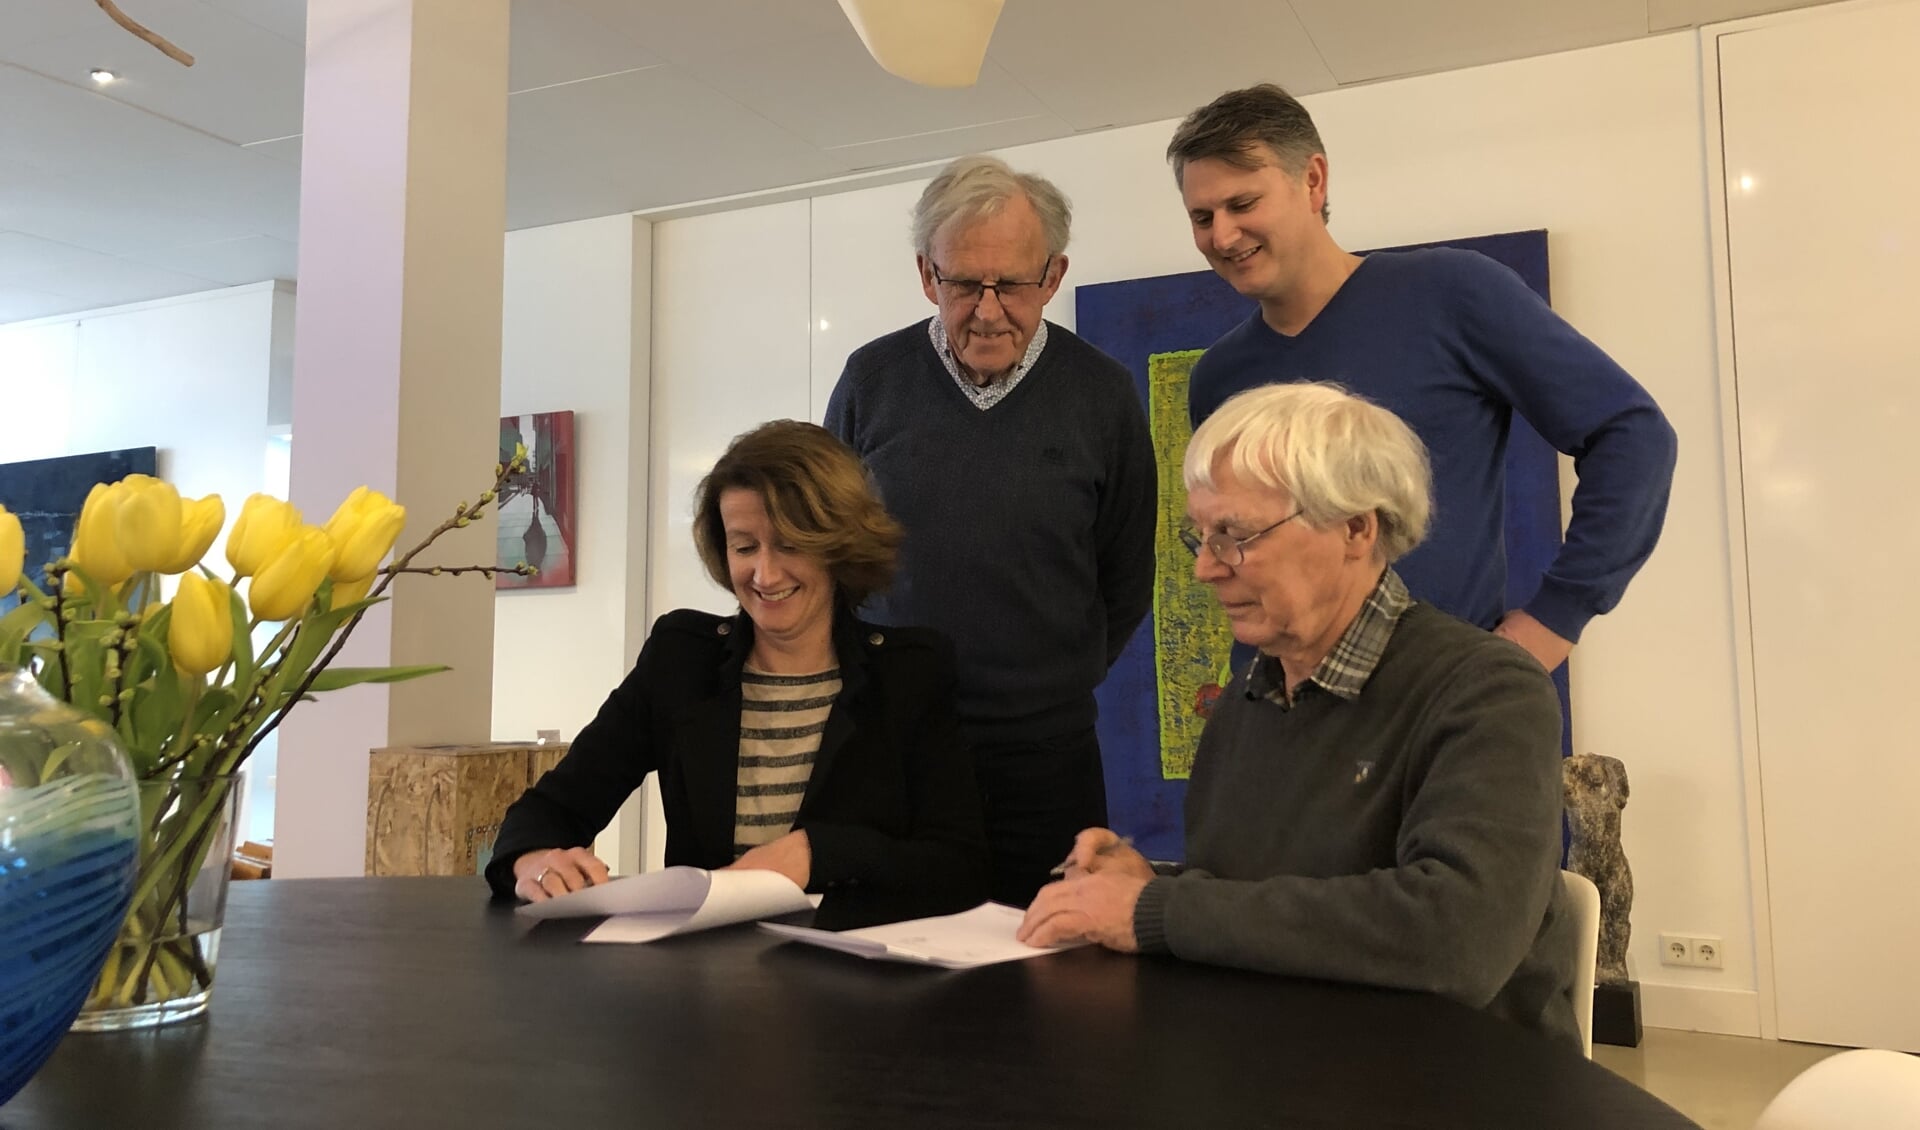 Ondertekening van het sponsorcontract door Ruud Kaper (stichting het Web) en Rianka Habraken (Kunst of Art). Daarachter staan Pim van Arkel (links) en Mike Hulshof (Kunst of Art). Foto: Petra Heusschen